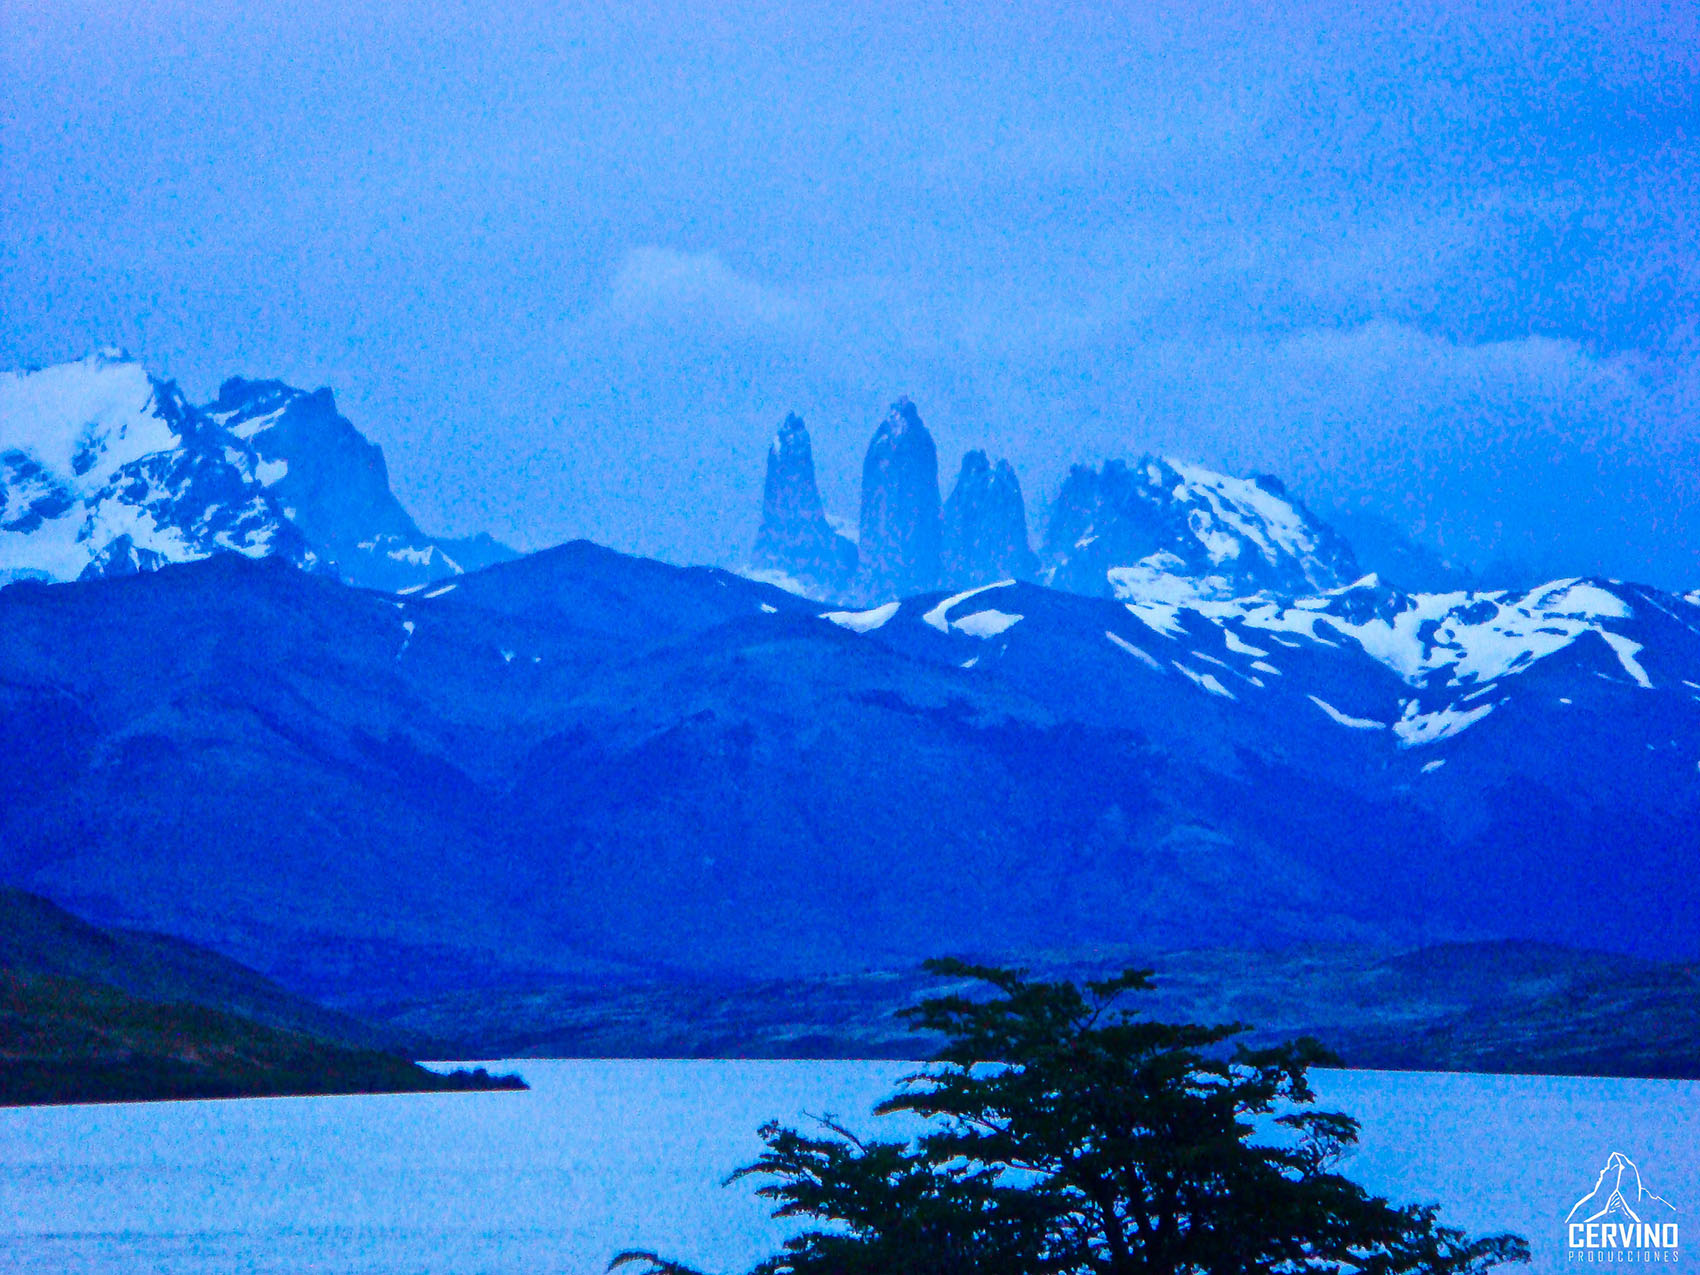 Portfolio_Cervino_2010_ Patagonia_06